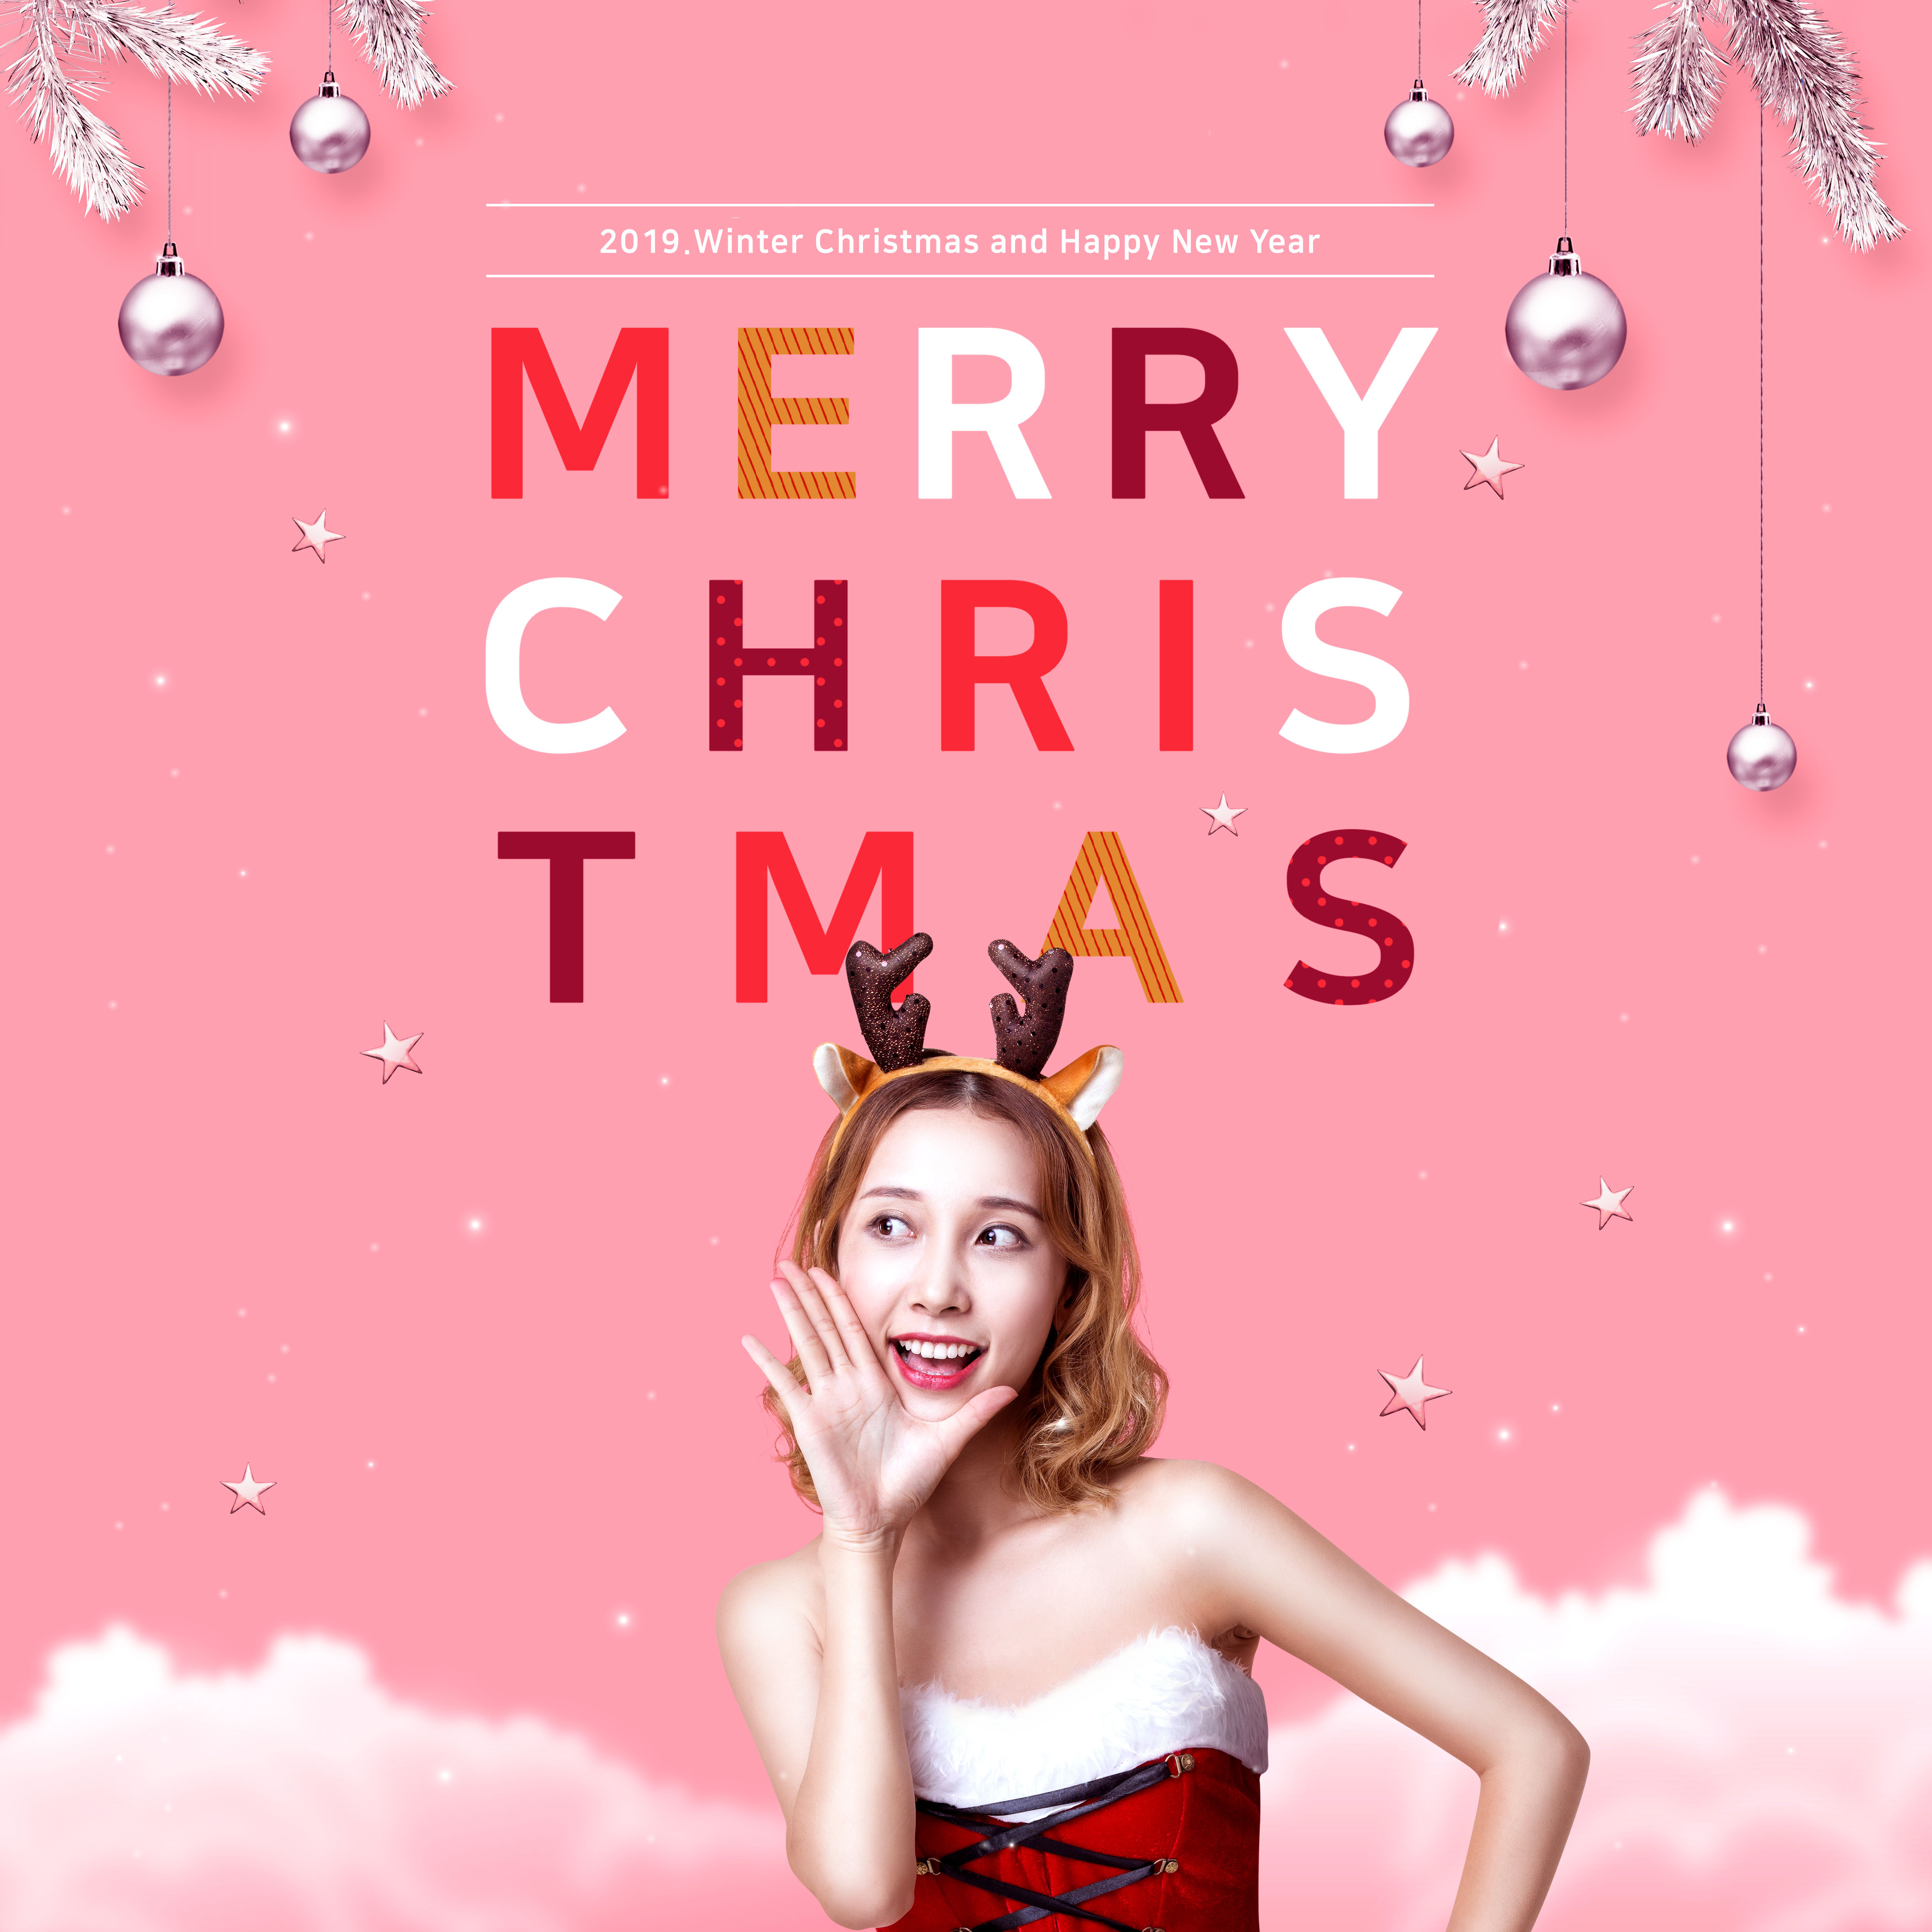 圣诞假期特惠促销活动宣传广告海报素材[PSD]插图